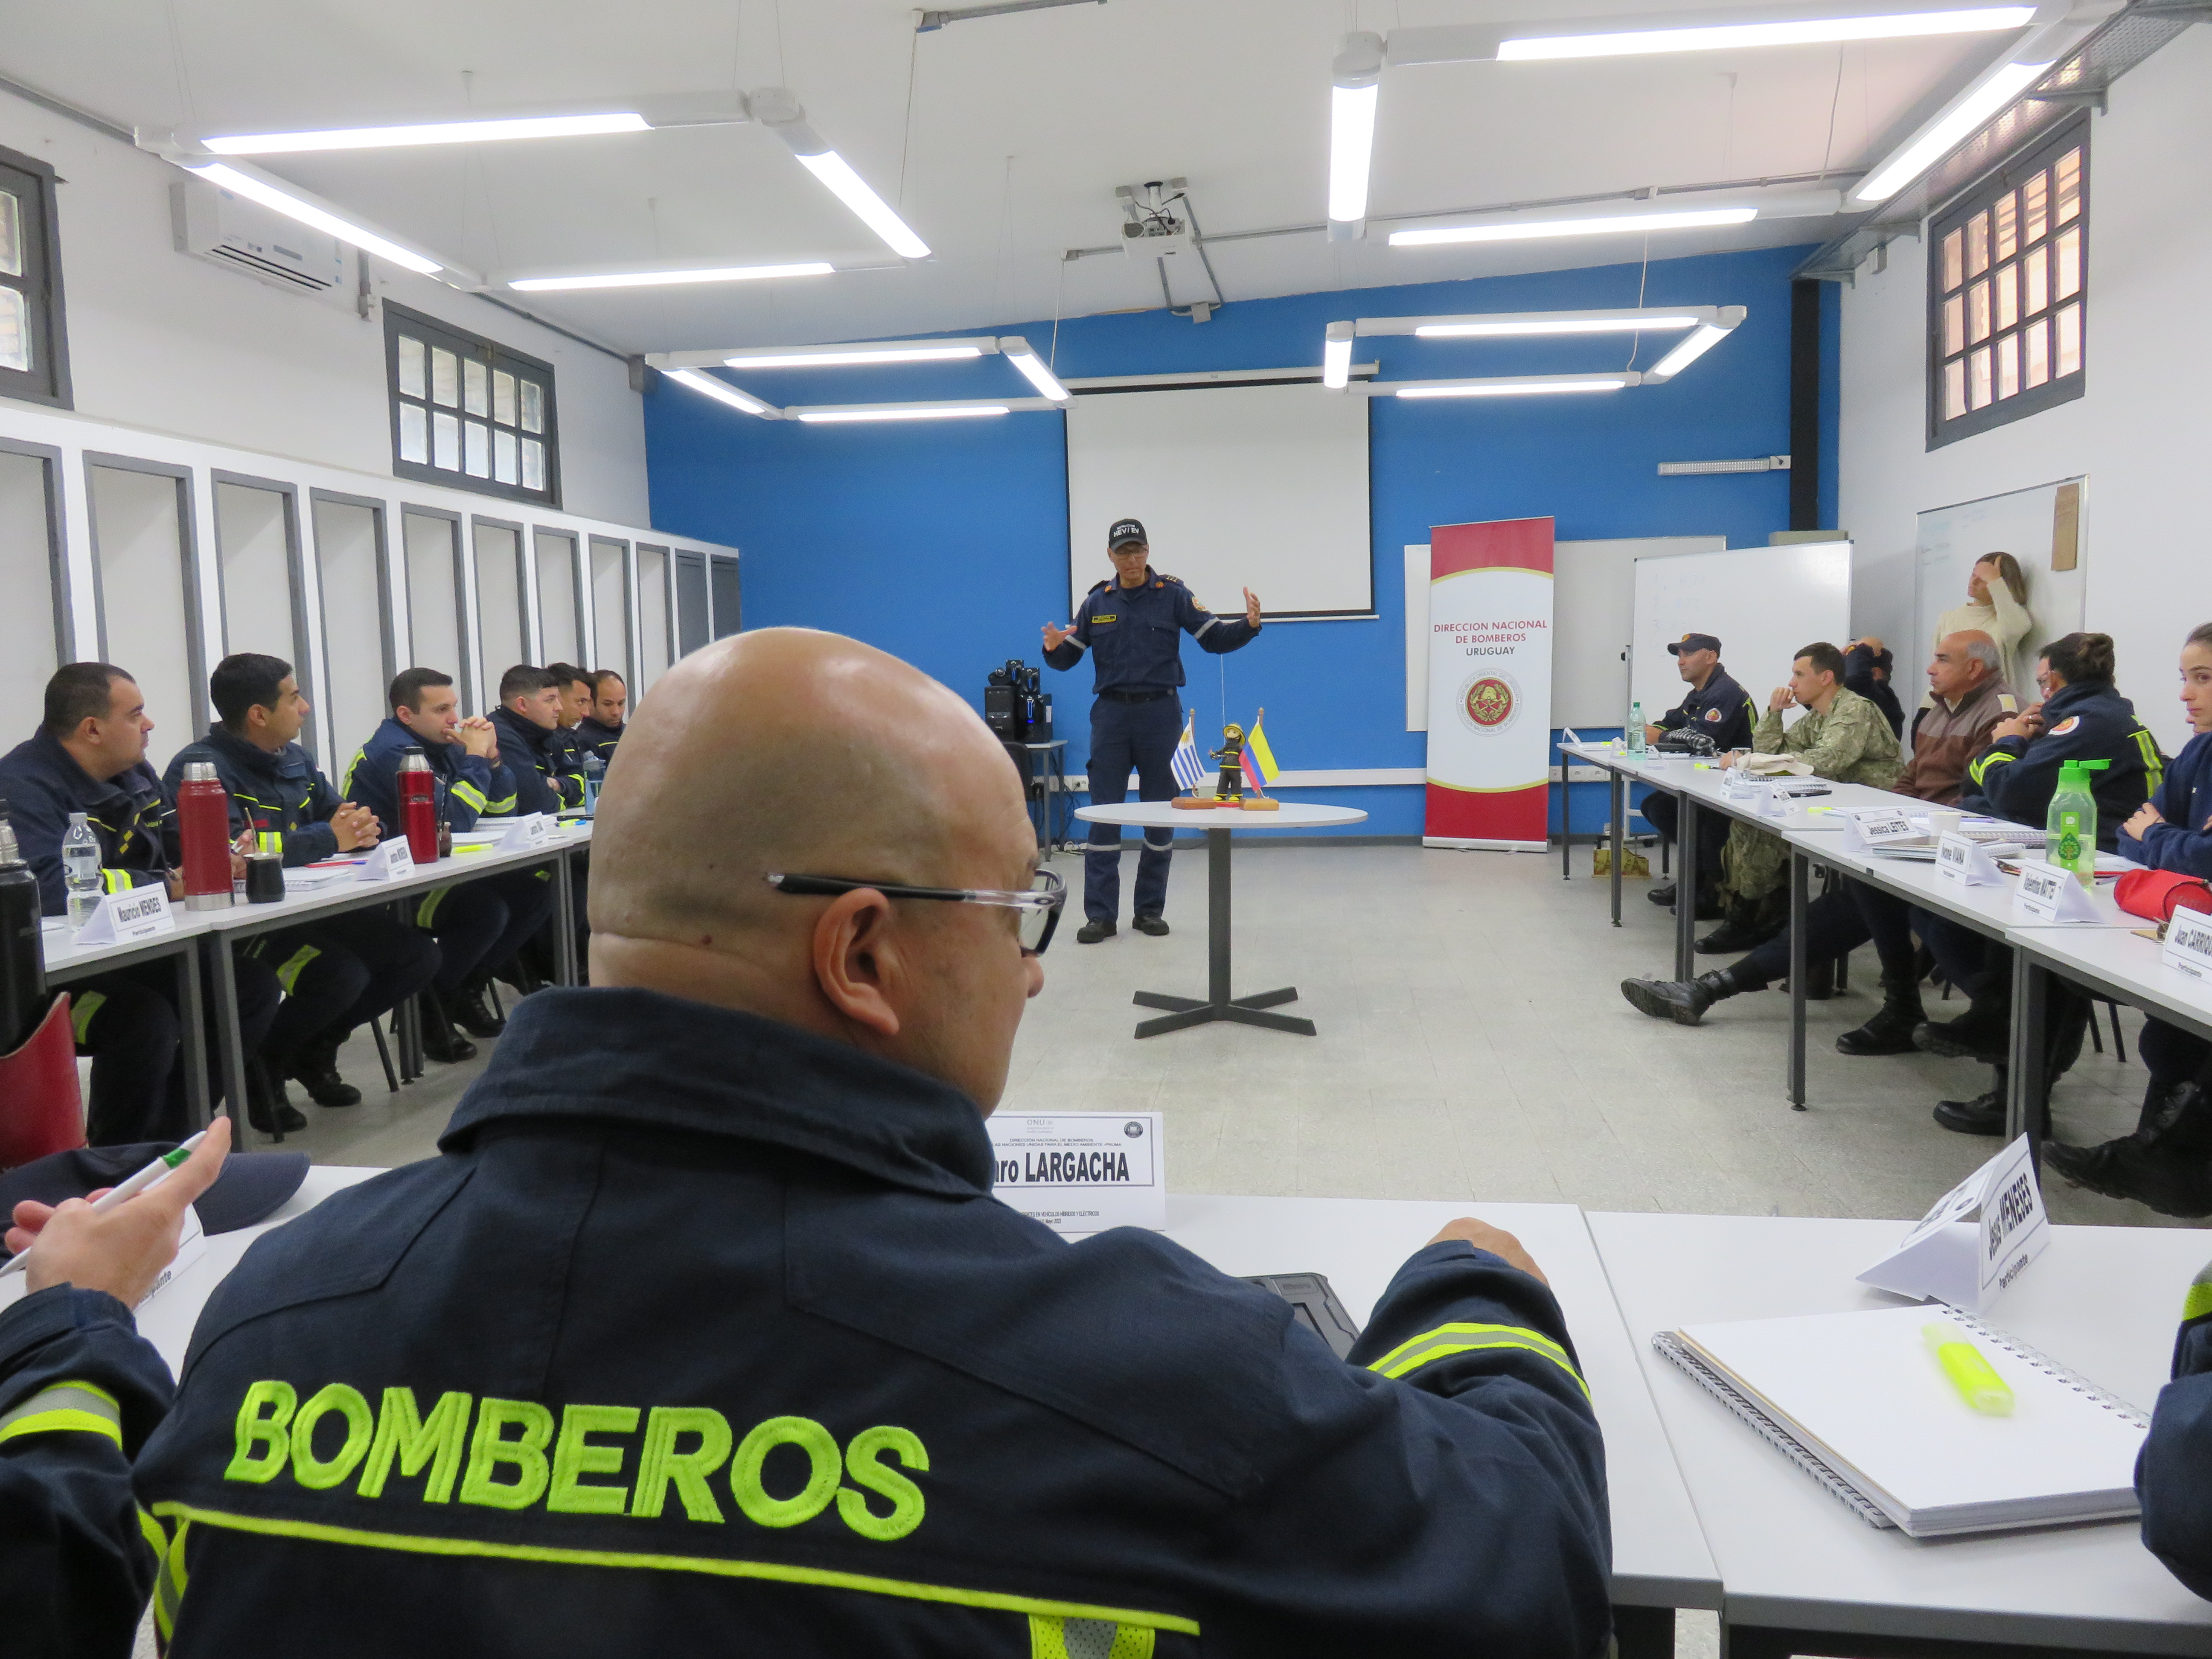 IMG_20230511_3766-Nruk26mM.jpg - El pasado jueves 11 de mayo culminó la &#034;Capacitación para bomberos sobre manejo de incidentes relacionados con la movilidad eléctrica&#034; en donde se capacitaron a 25 bomberos en la Base Aérea de Santa Bernardina del departamento de Durazno. Esta capacitación es la continuación del primer curso regional que organizó la plataforma MOVE del Programa de la Naciones Unidas para el Medio Ambiente a finales de 2022 en Paraguay, donde participaron y se formaron dos bomberos instructores de Uruguay.